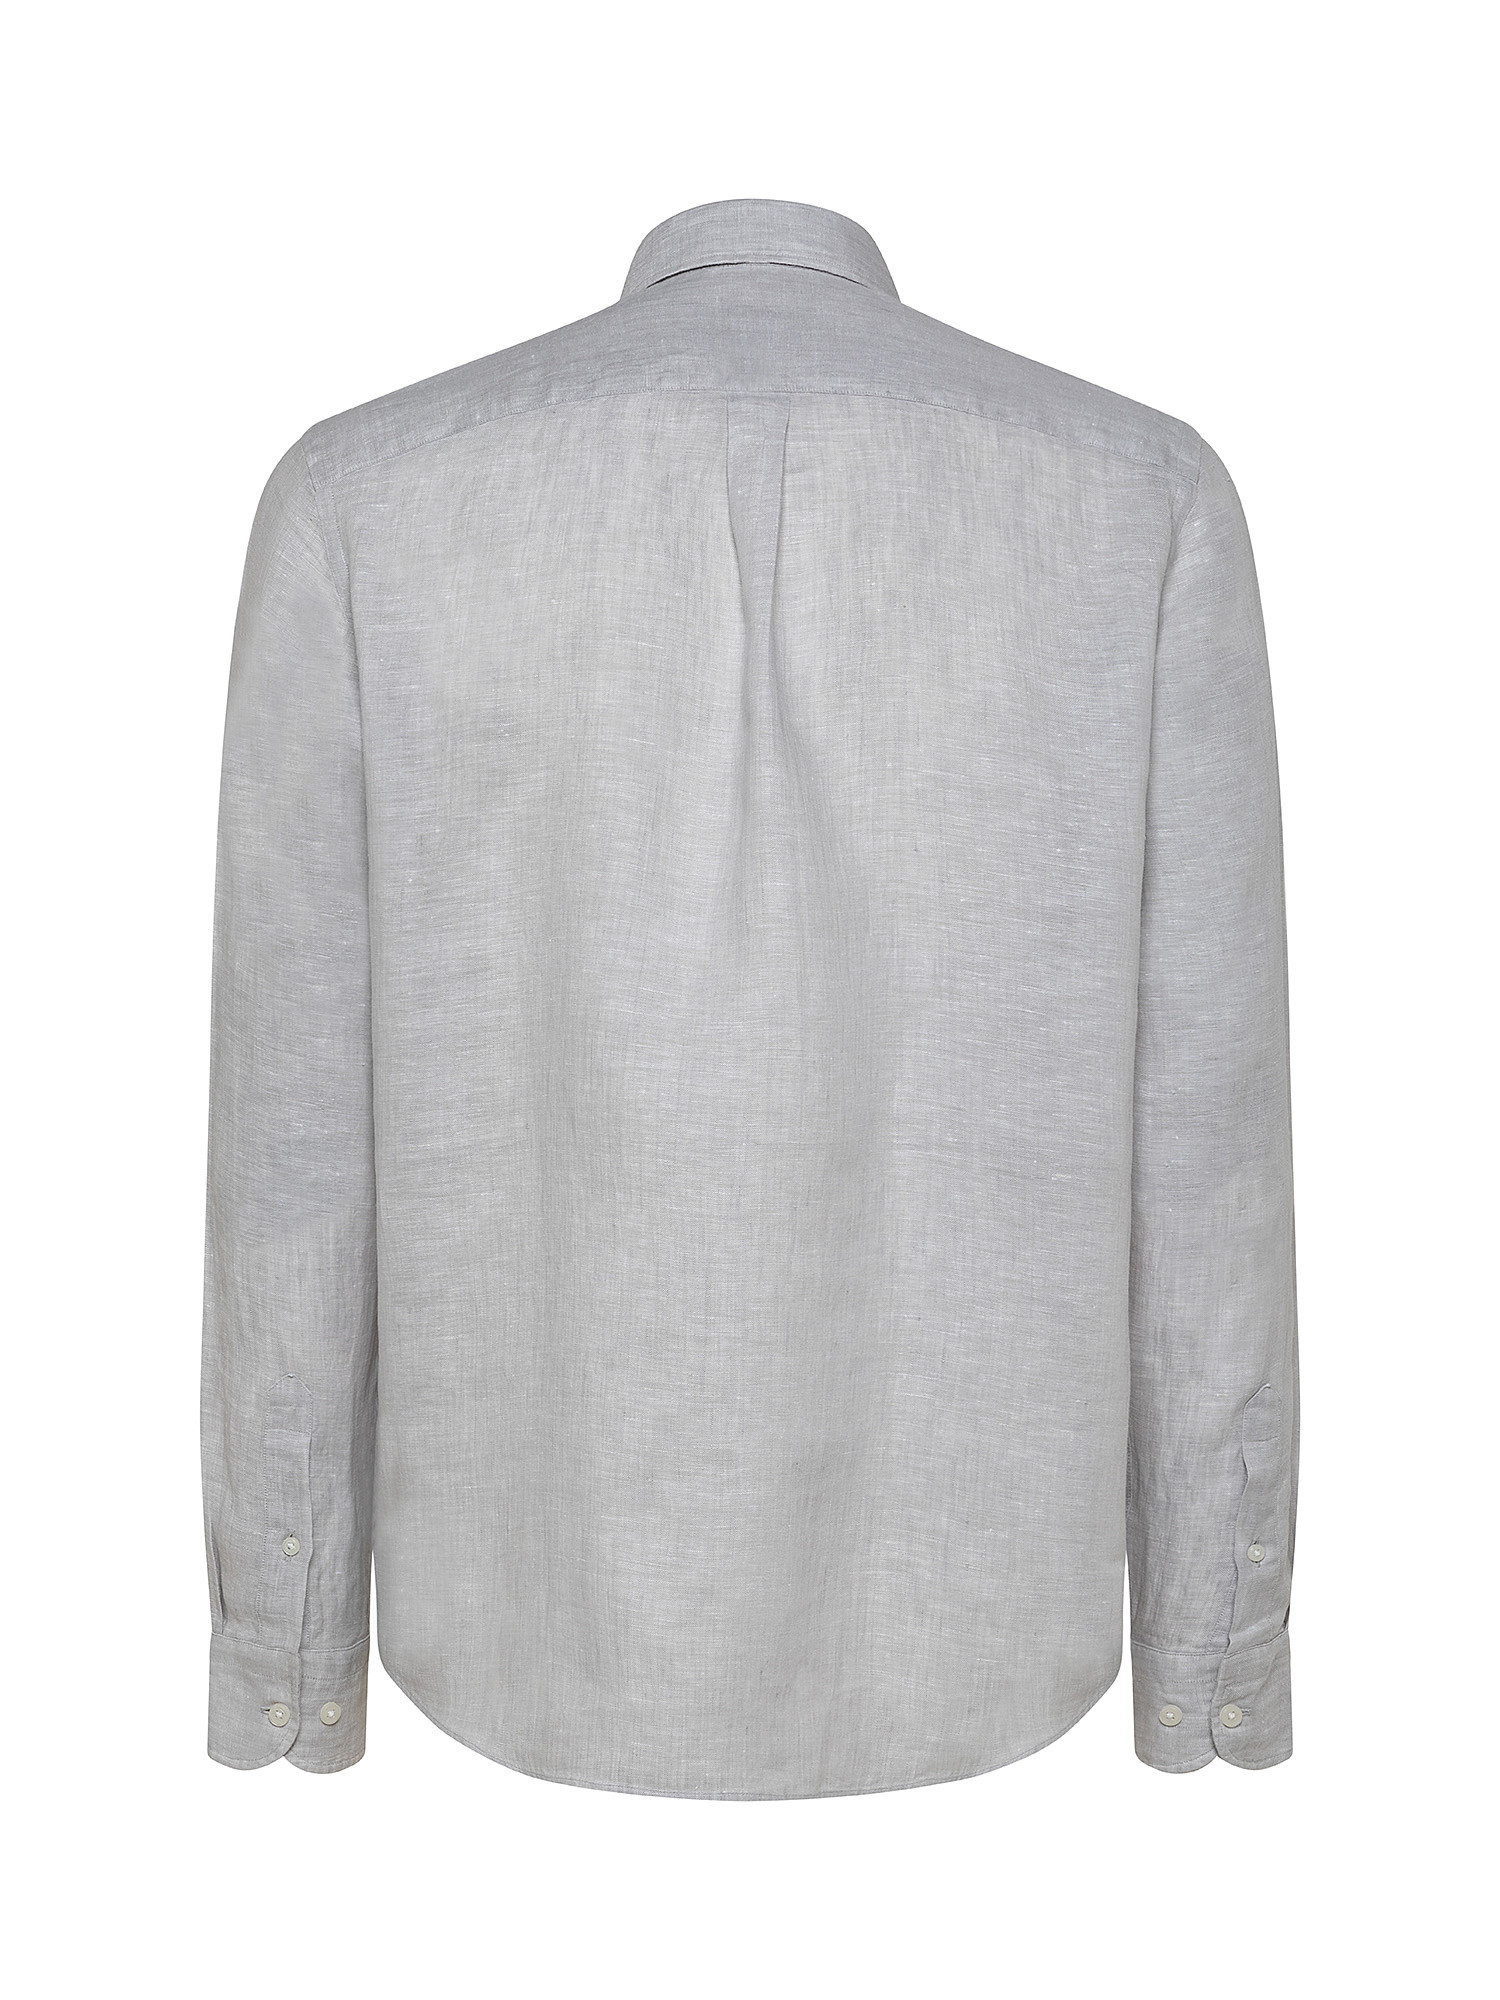 Linen shirt, Light Grey, large image number 1